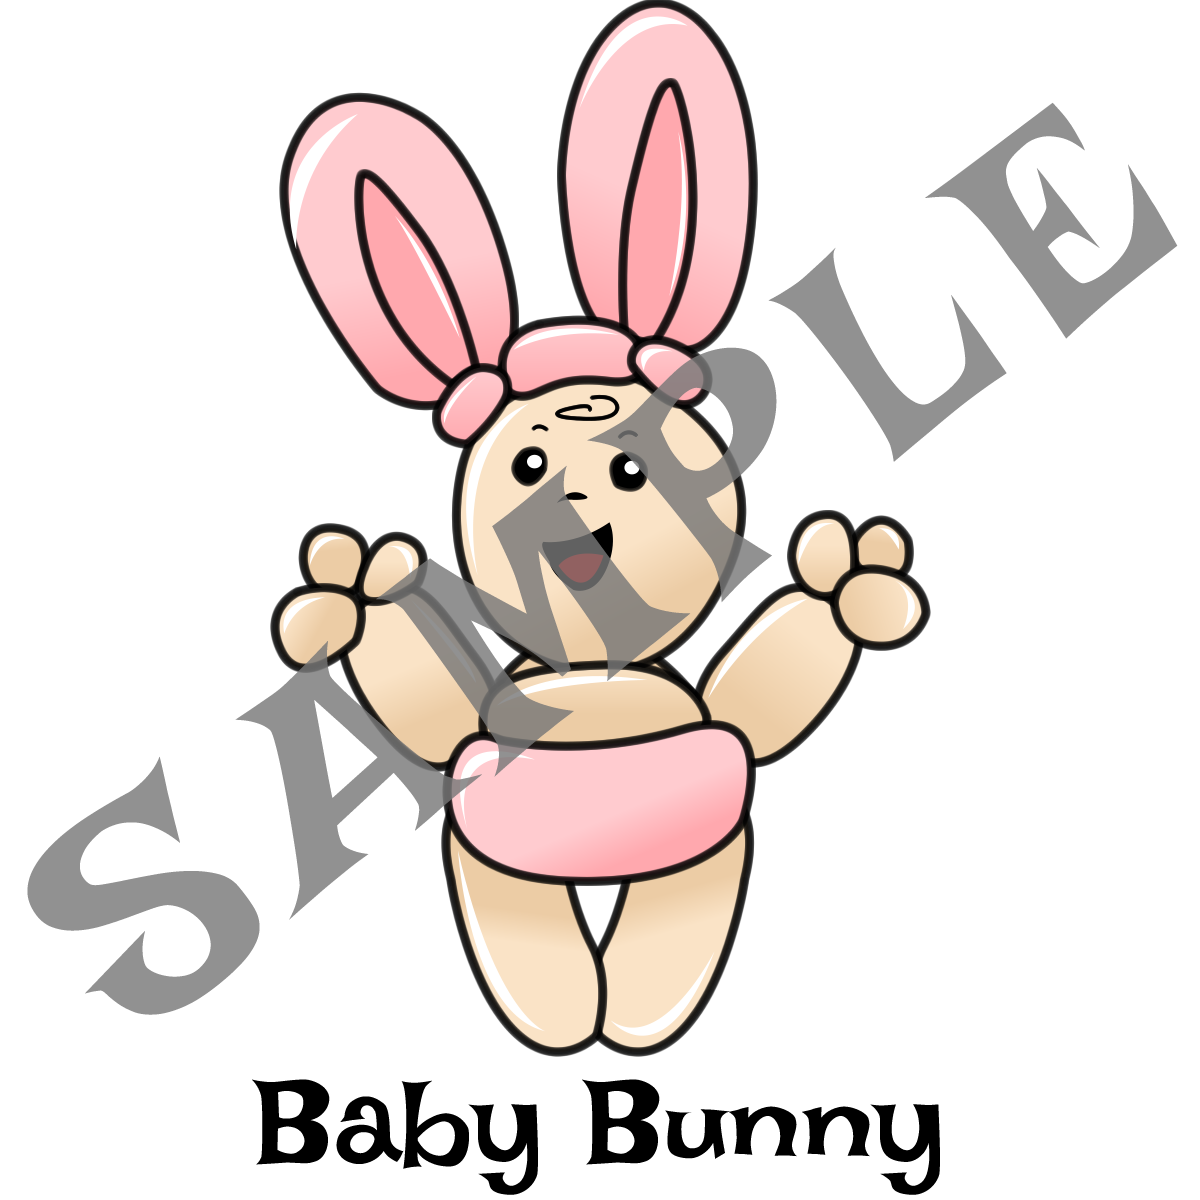 Juan Bunny Baby